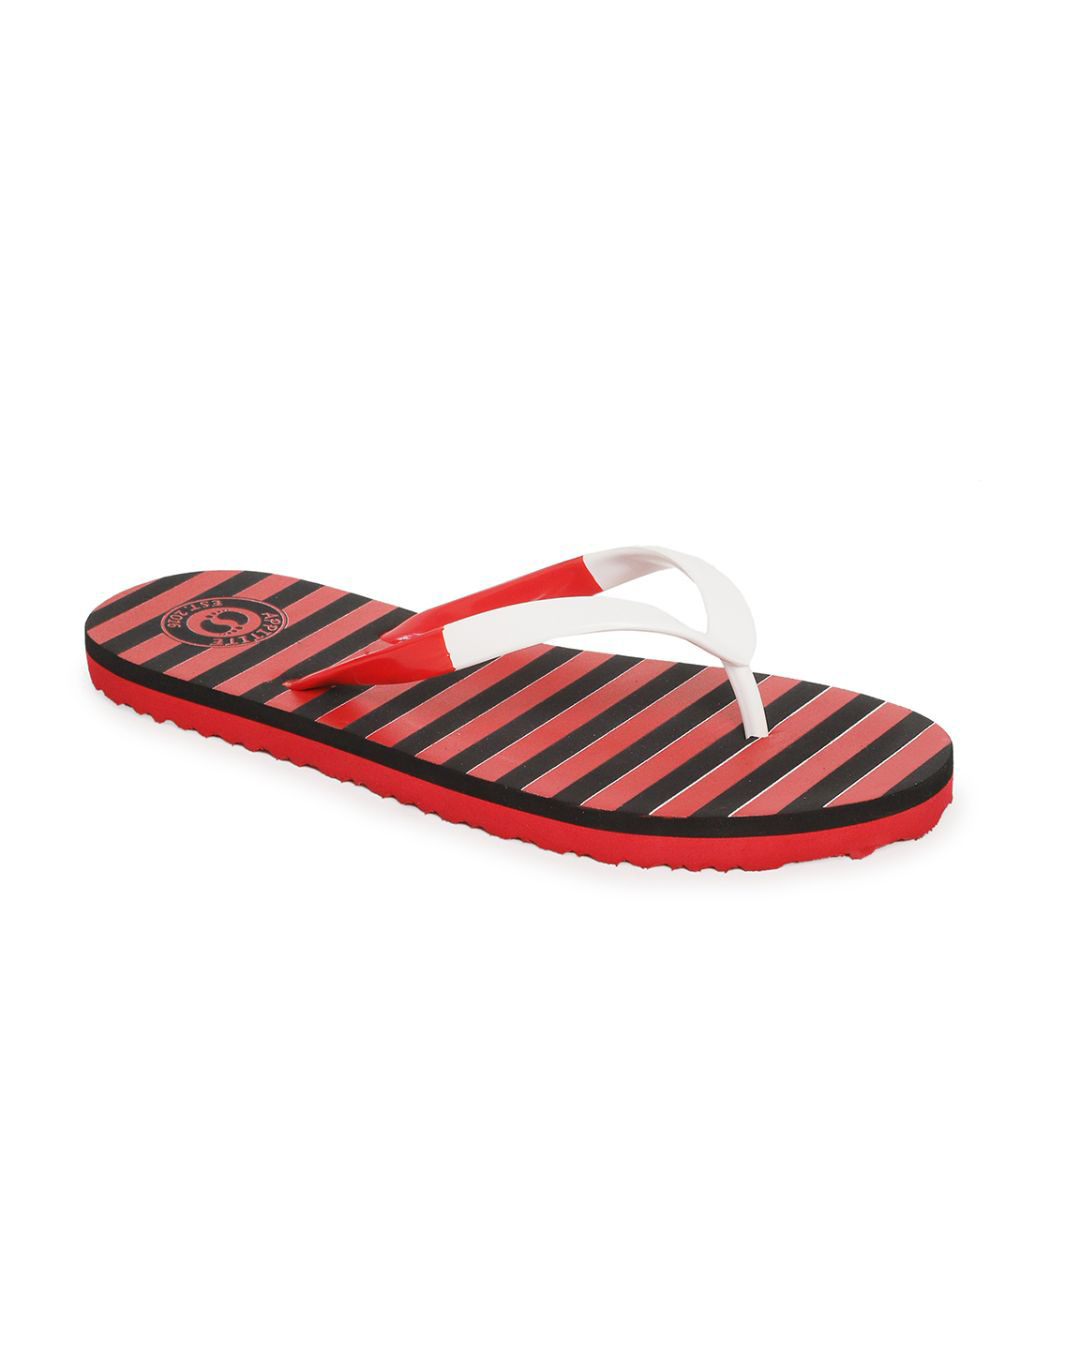 Shop Red And Black Striped Comfort Flip Flop For Women.-Back